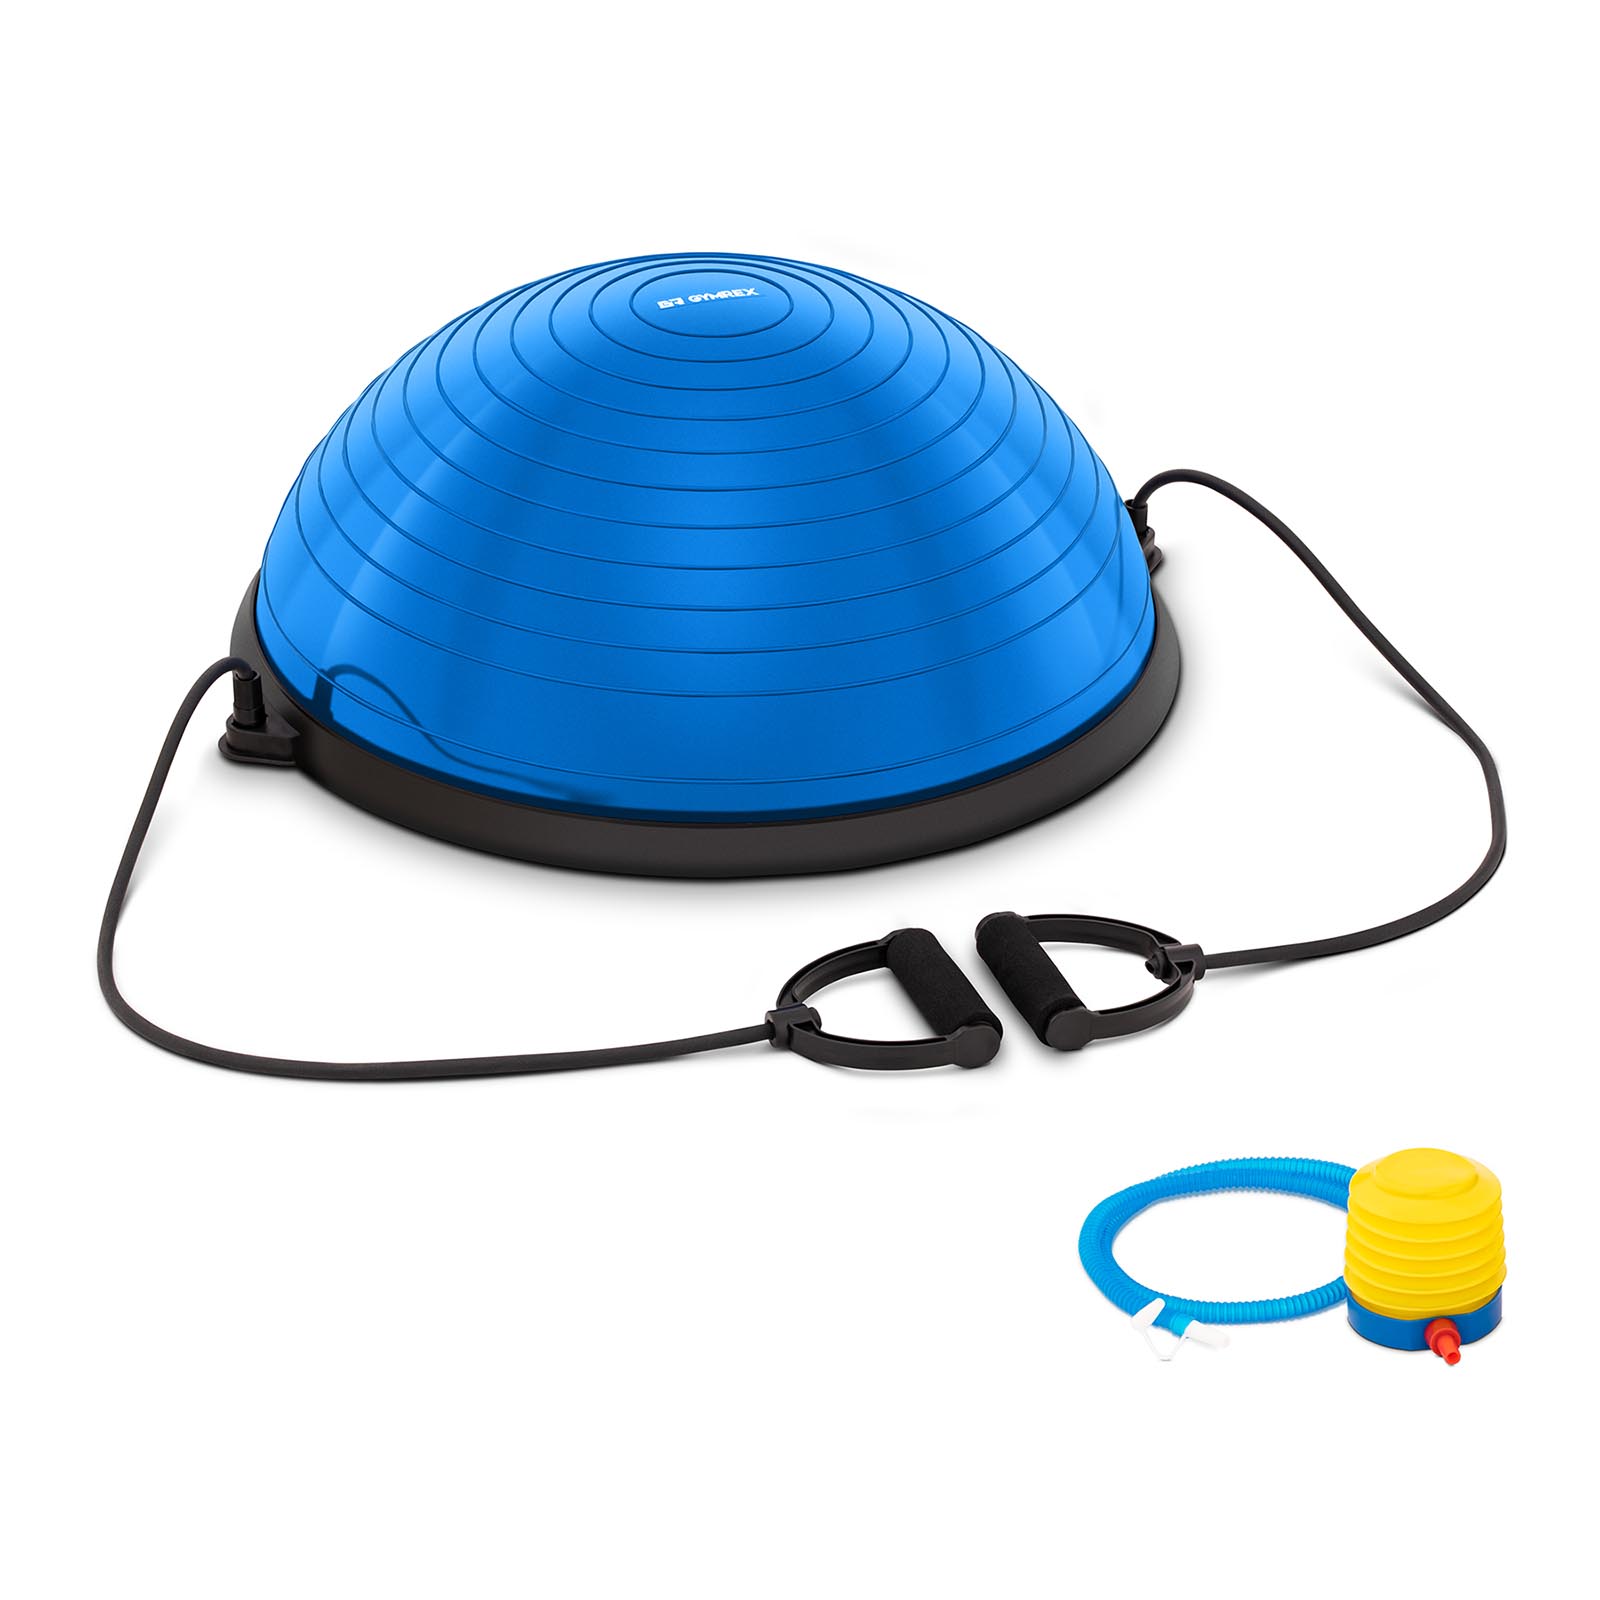 Lopta za jogu uklj. Otporne trake - 220 kg - plave